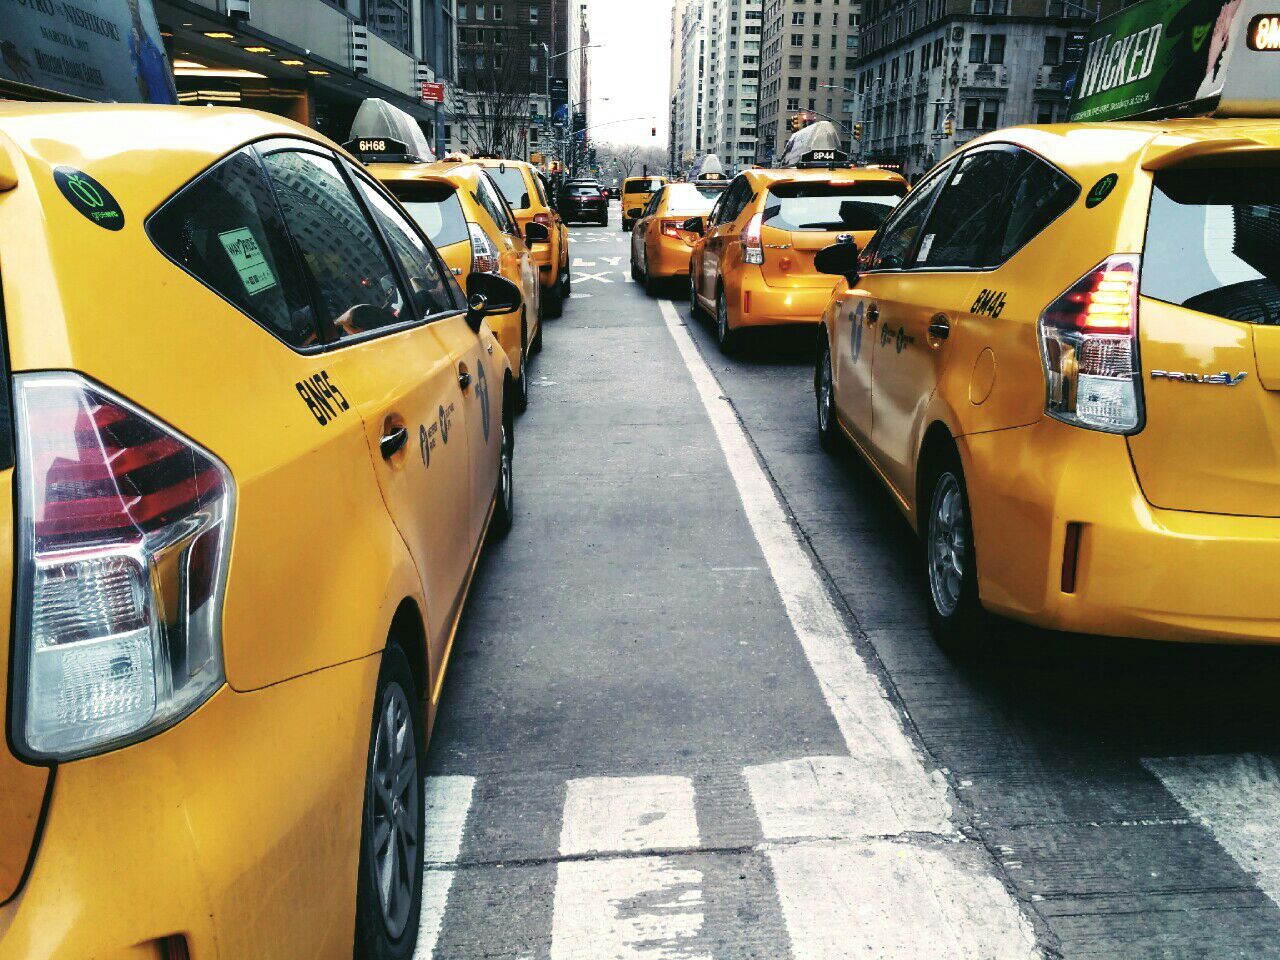 纽约代表性的小黄车taxi穿梭在此,整个街景画面非常漂亮